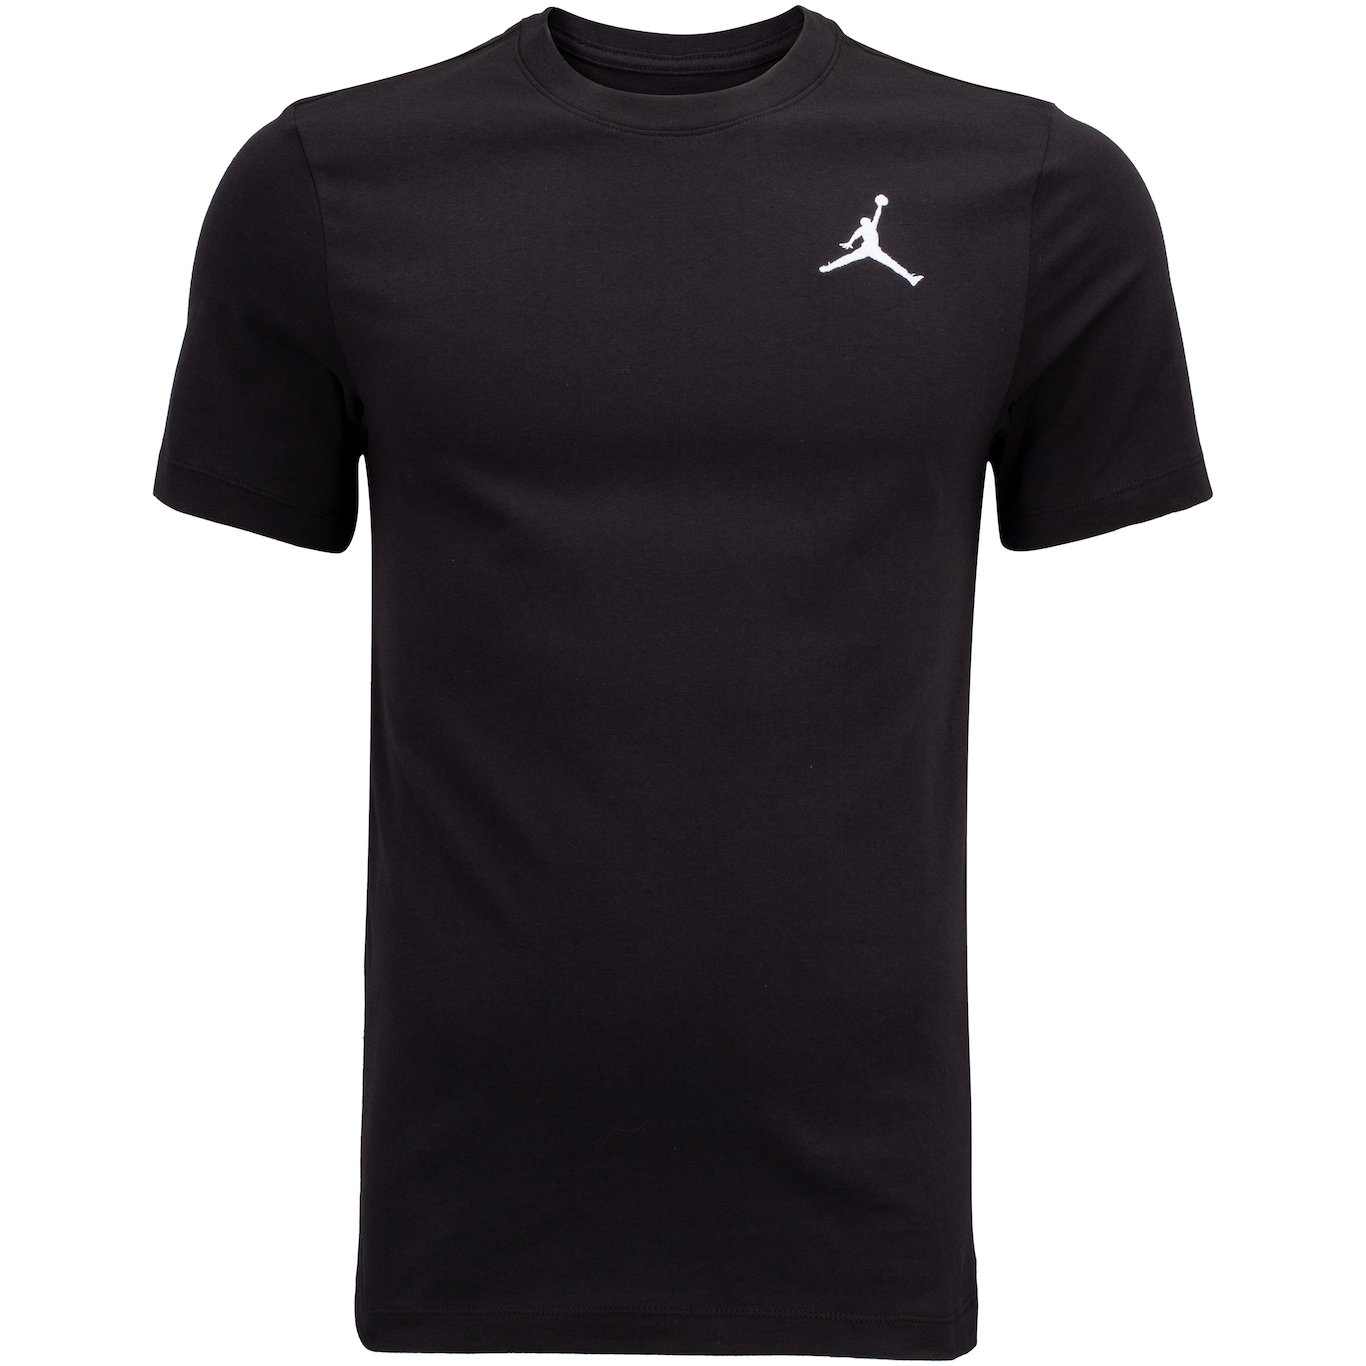 Camiseta Masculina Michael Jordan Jumpman Nike Manga Curta - Foto 1